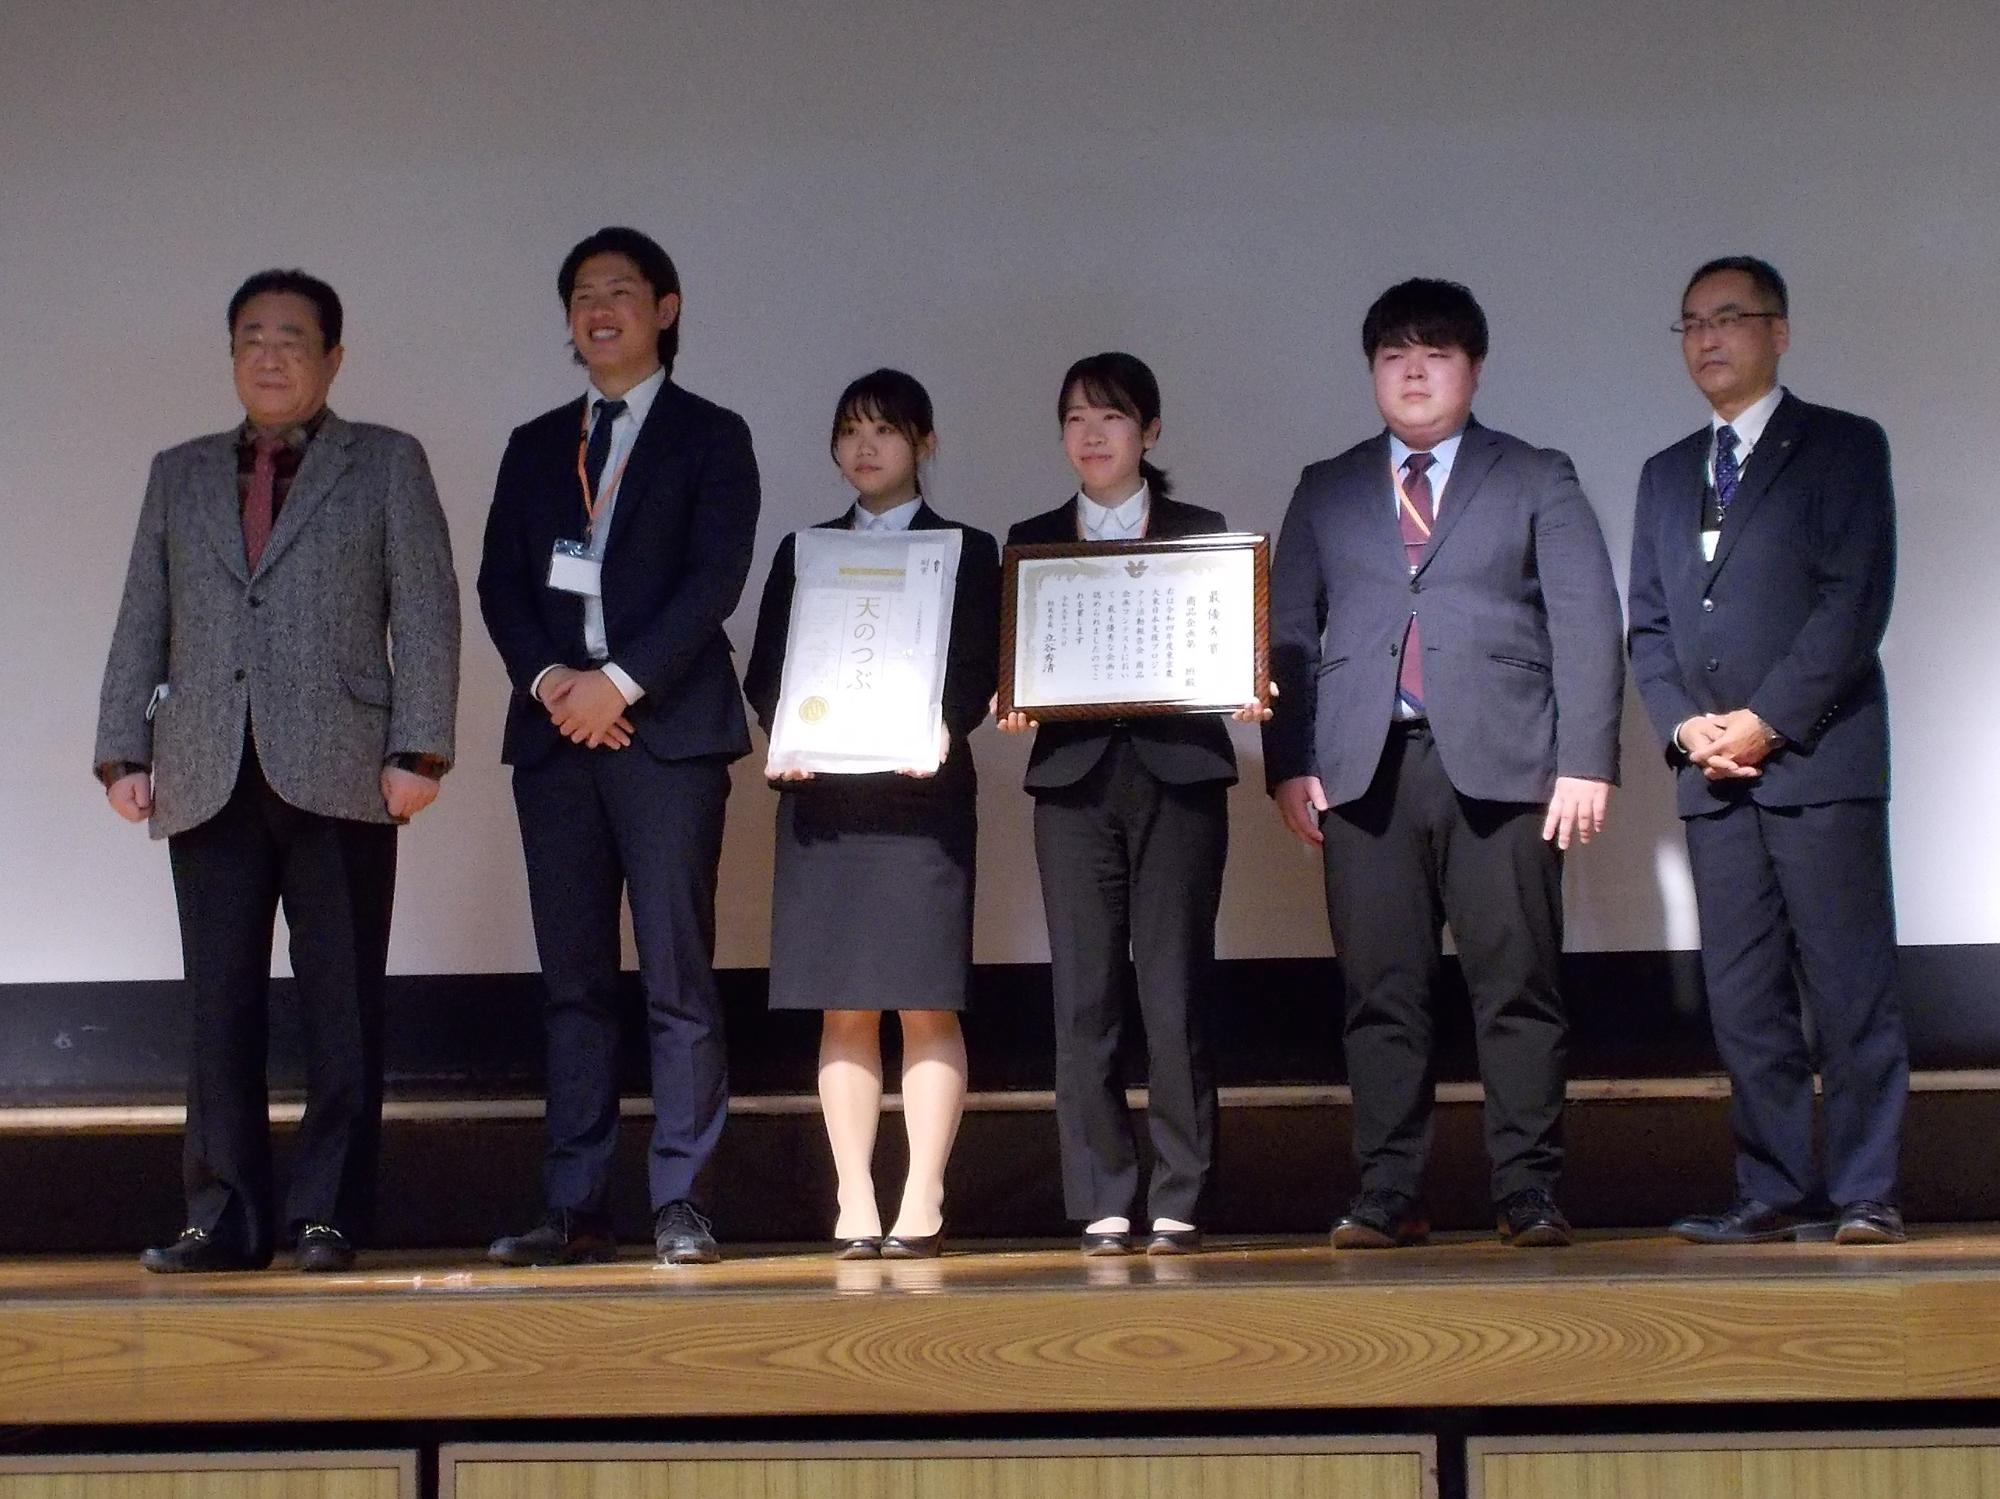 東京農大東日本支援プロジェクトで、商品企画コンテストの受賞者との記念撮影の様子